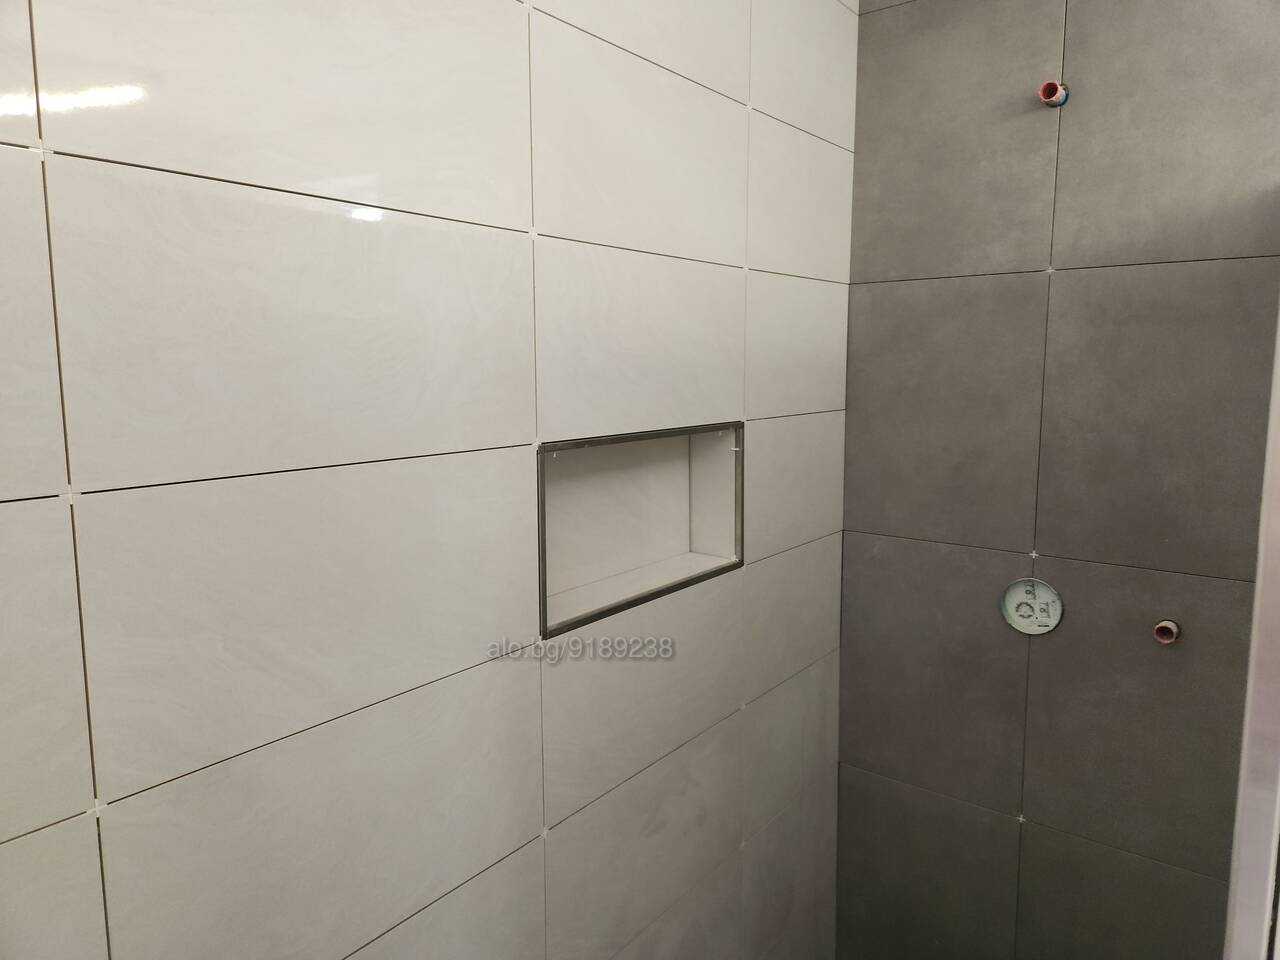 Стоителни ремонти,  цялостен ремонт на баня|Пловдив| Ремонт на баня,